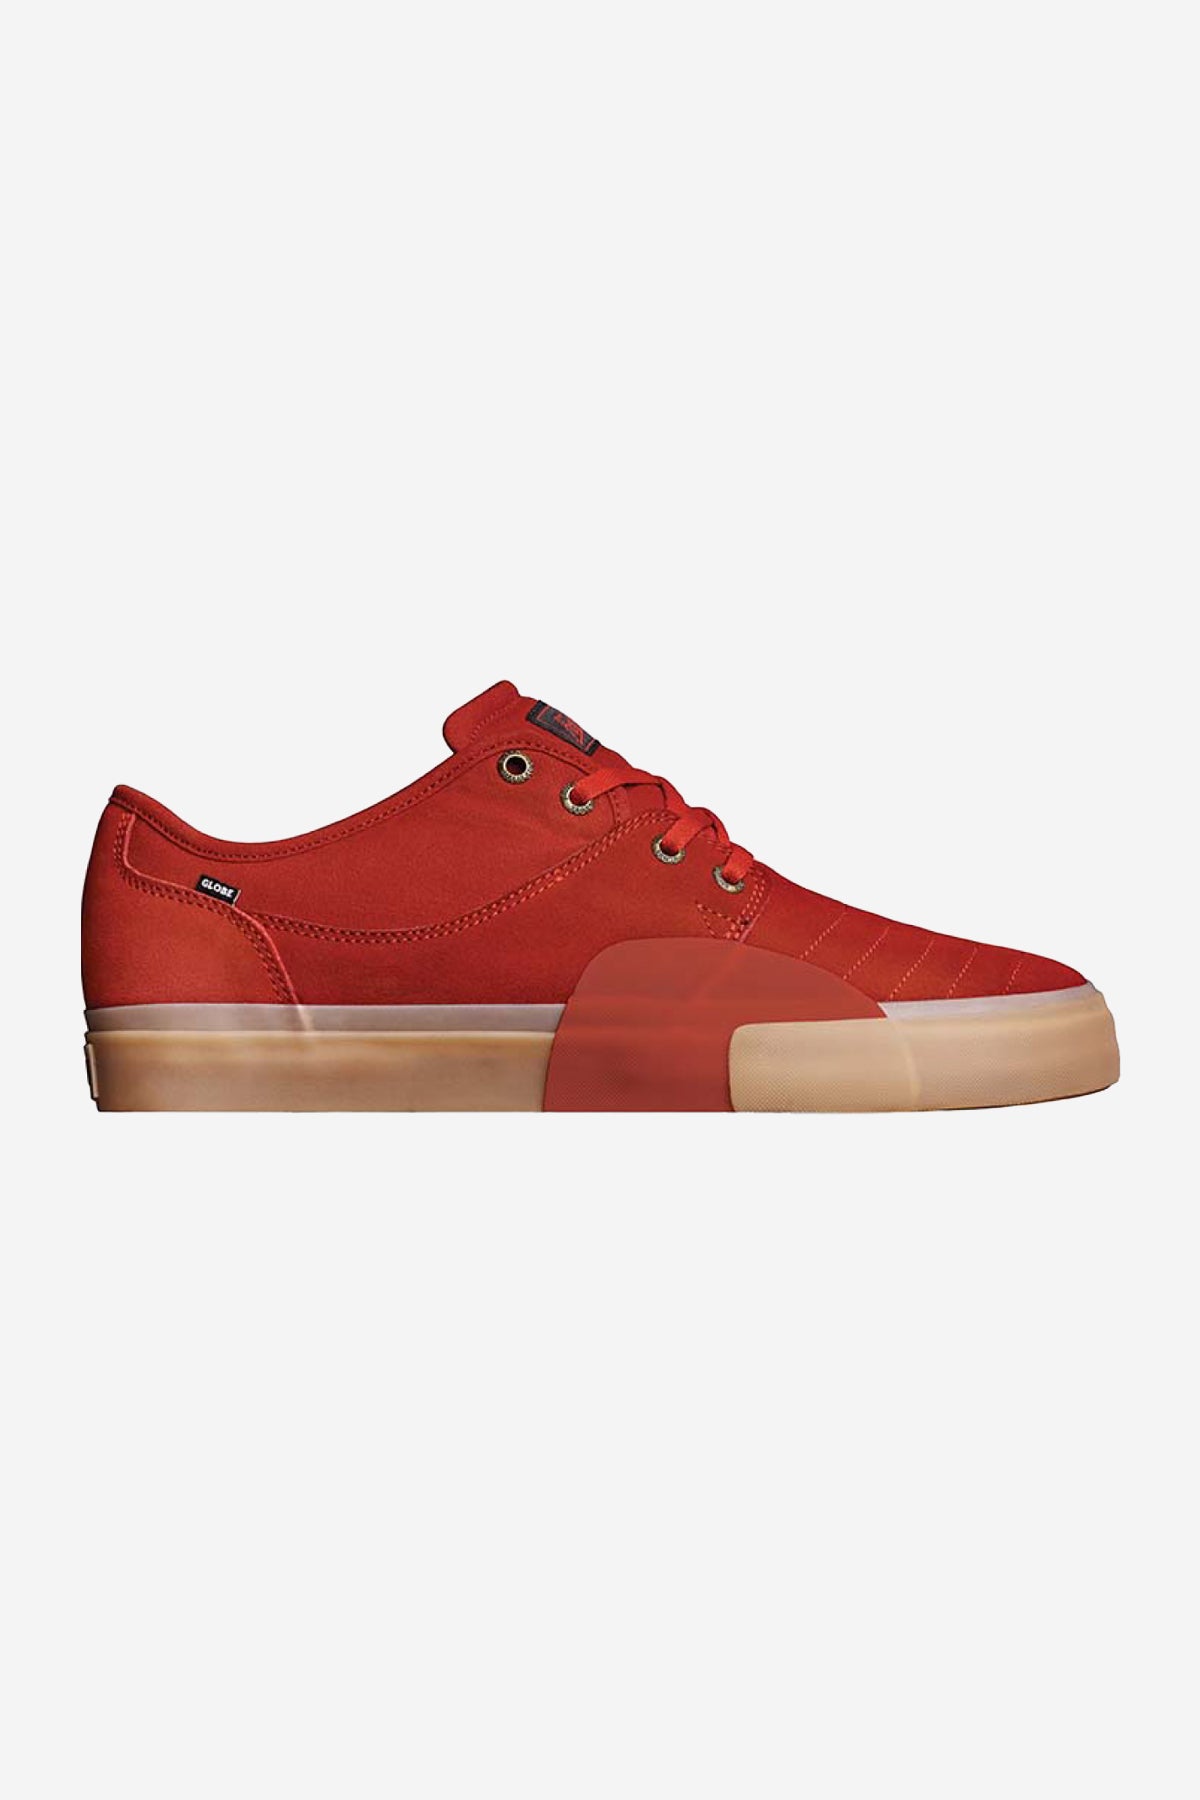 zapatillas mahalo plus red goma skateboard